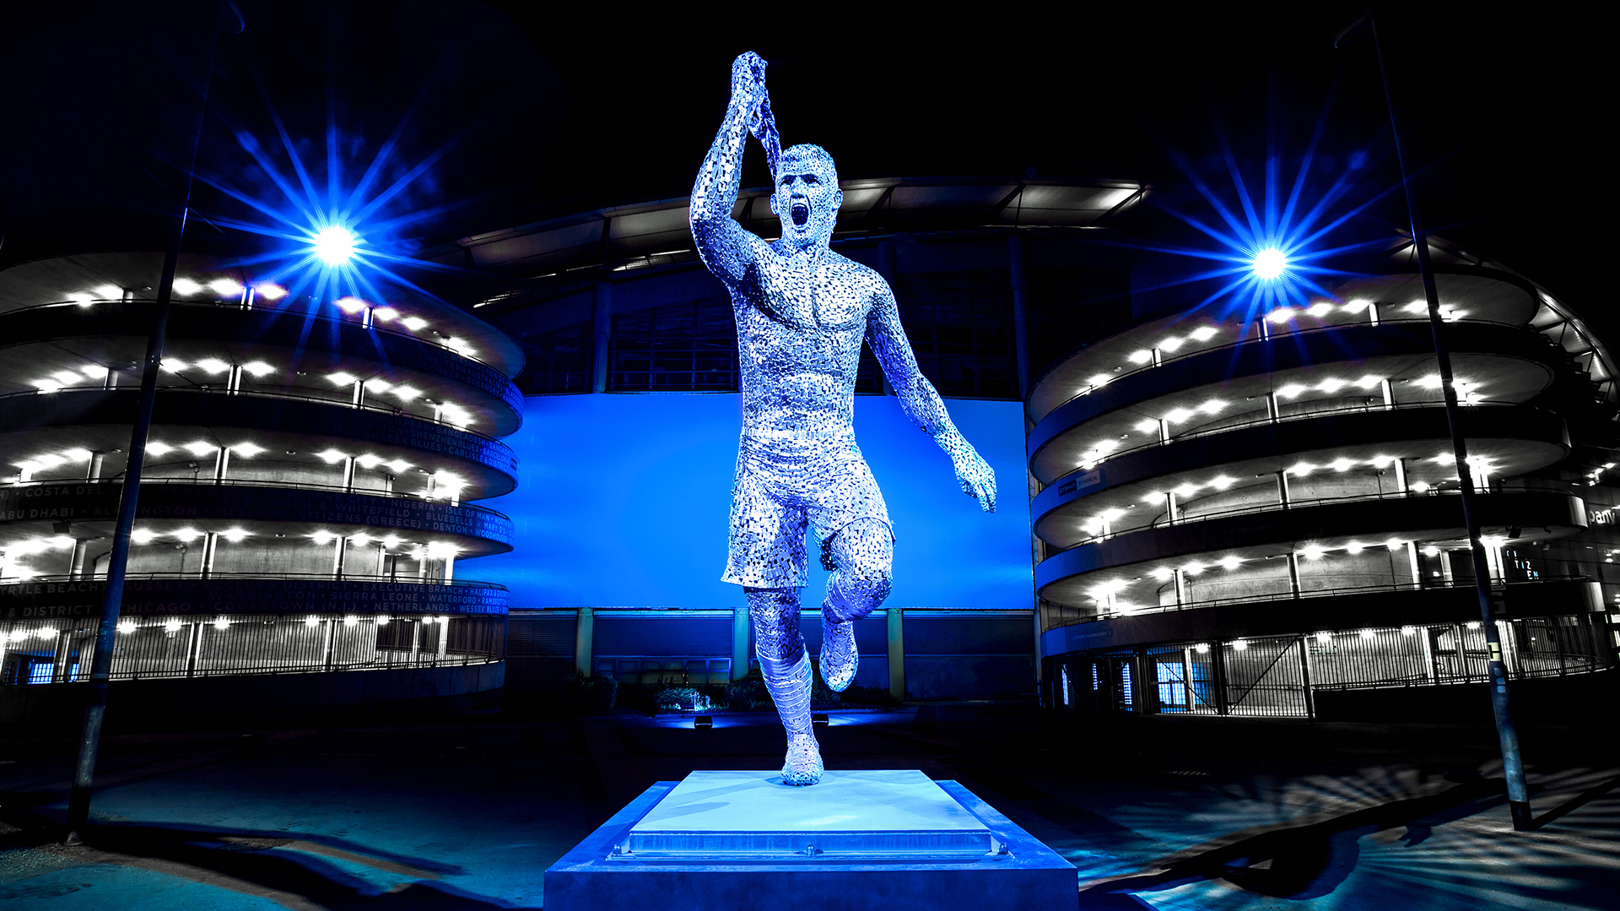 El City revela la estatua de Sergio Agüero en el aniversario de 93:20